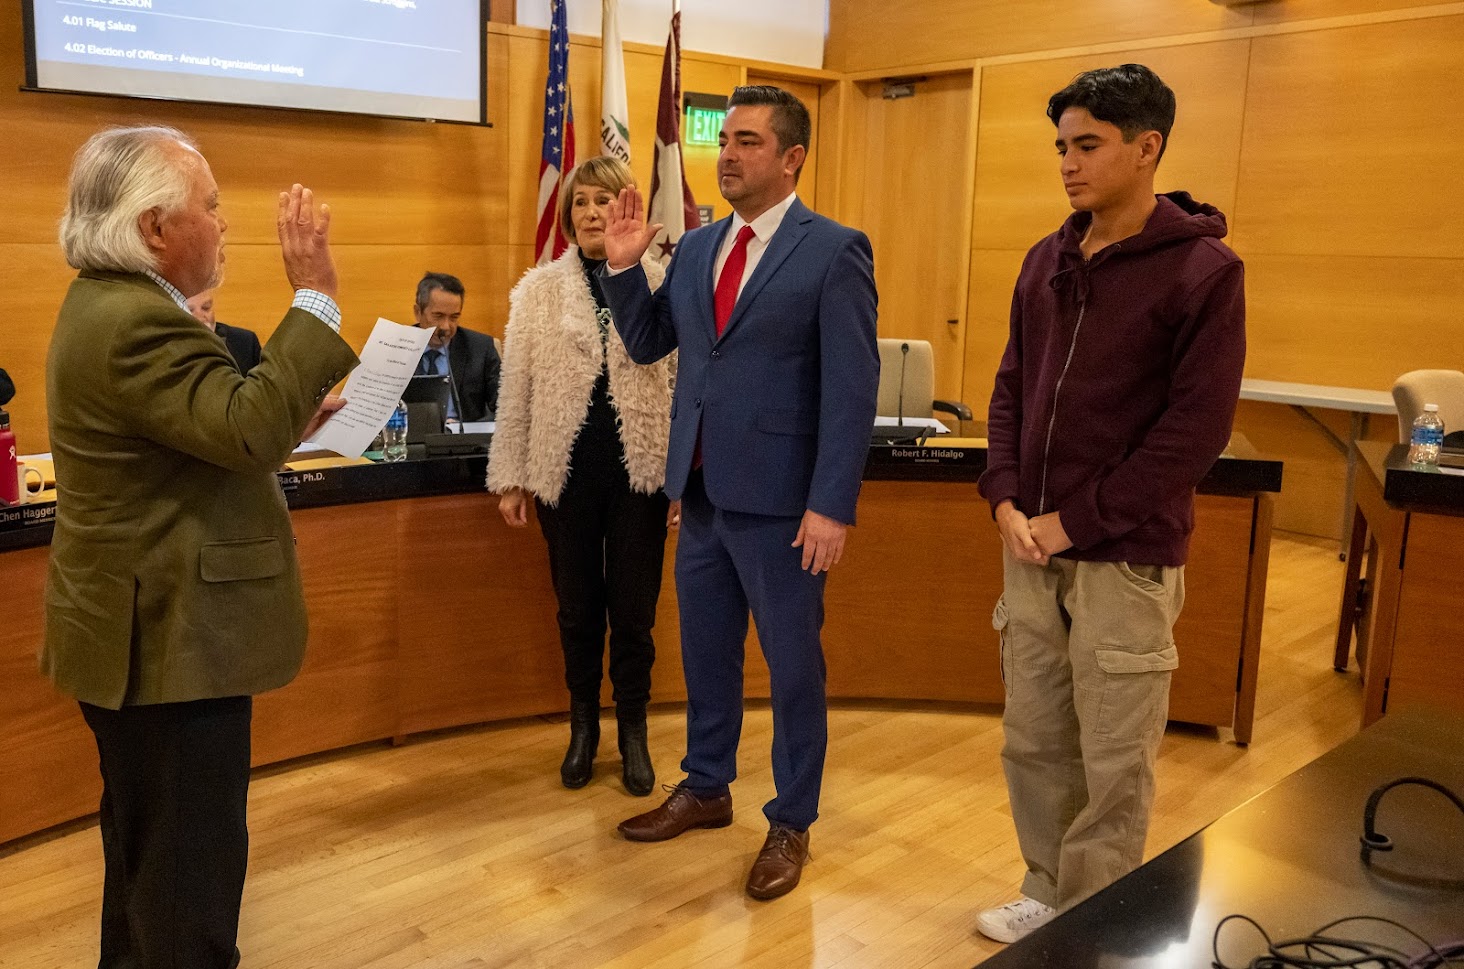 Trustee Robert Hidalgo raises his right hand as he is sworn in for another term.